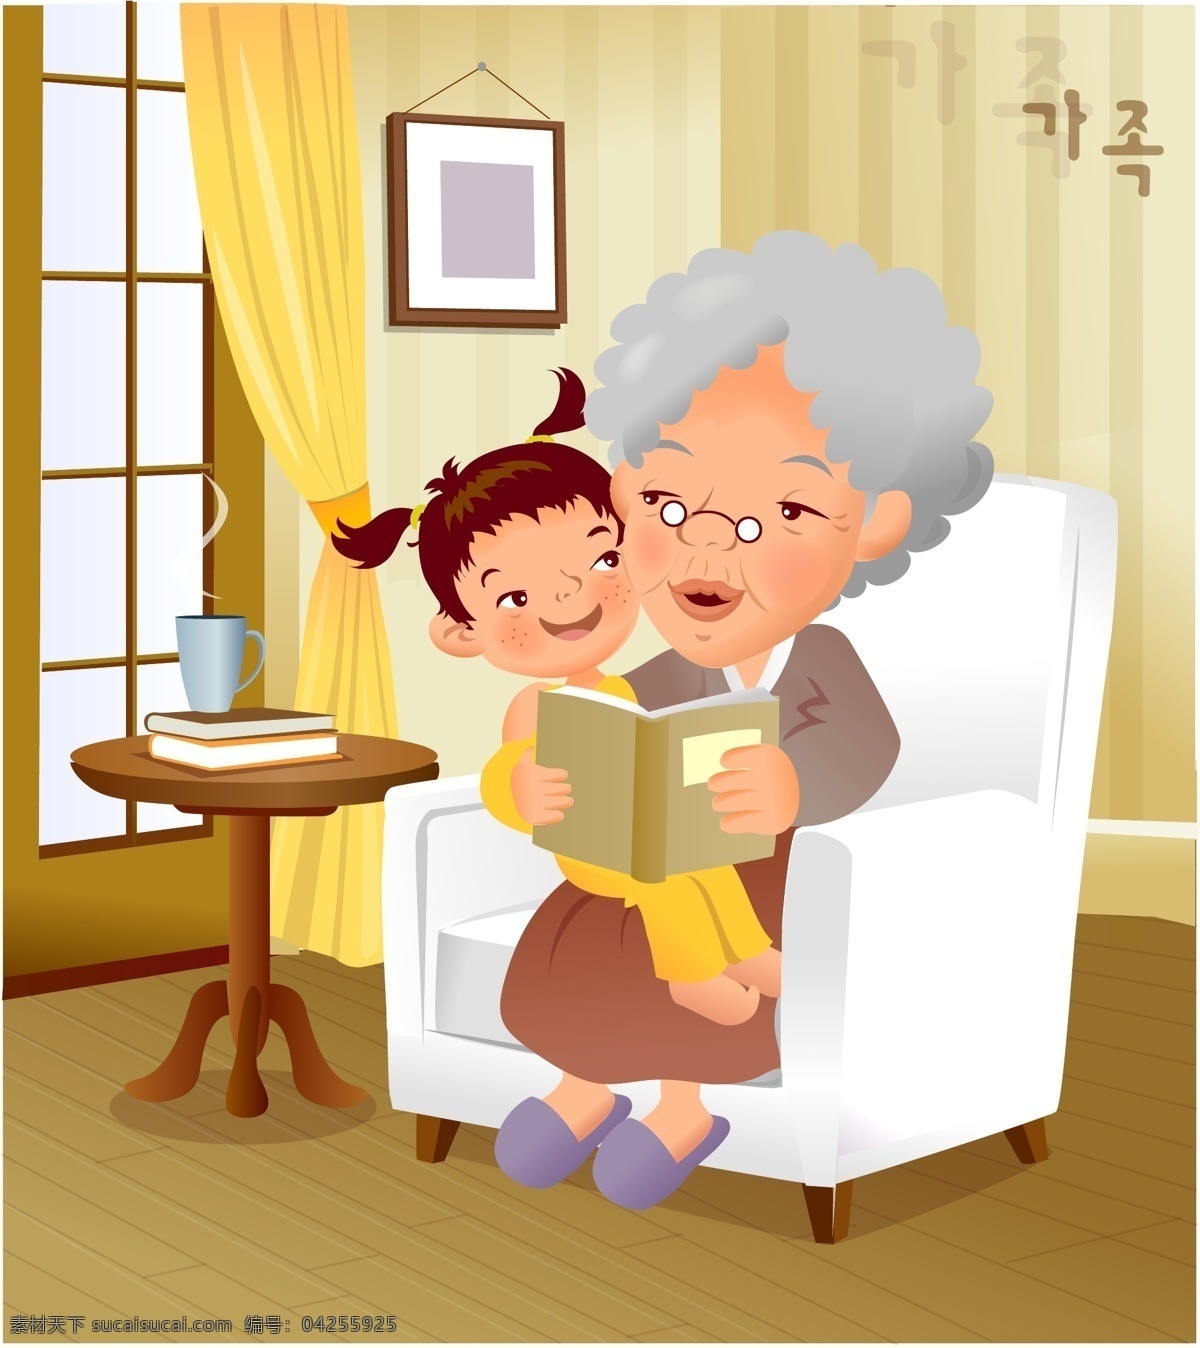 卡通 家庭 插画 矢量 人物 可爱 老奶奶 桌子 看书 讲故事 矢量素材 日常生活 矢量人物